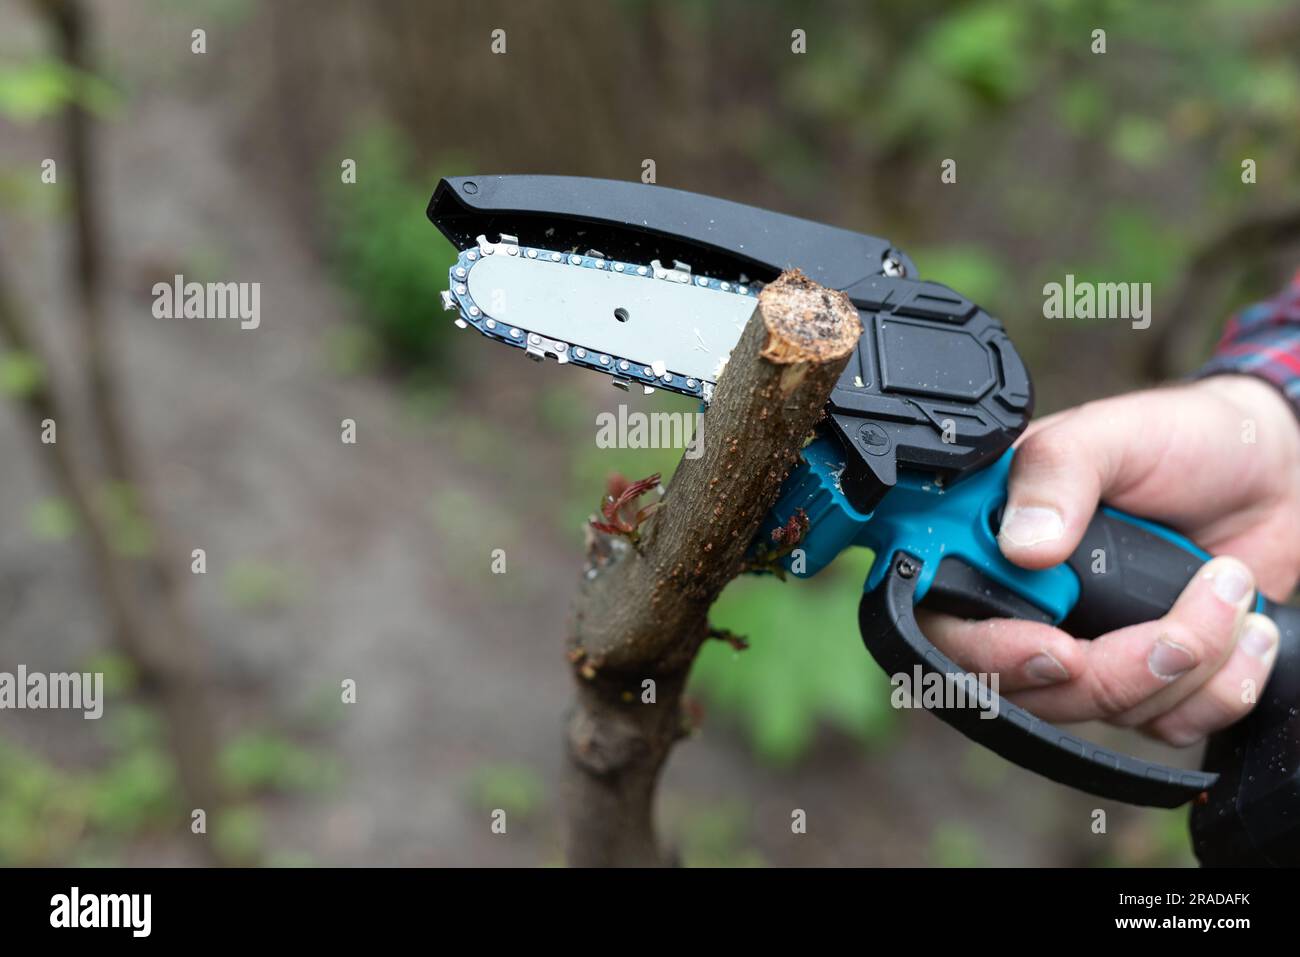 Halten Sie die leichte Motorsäge mit Batterie in der Hand, um einen gebrochenen Ast eines Baumes an sonnigen Tagen zu trimmen Stockfoto